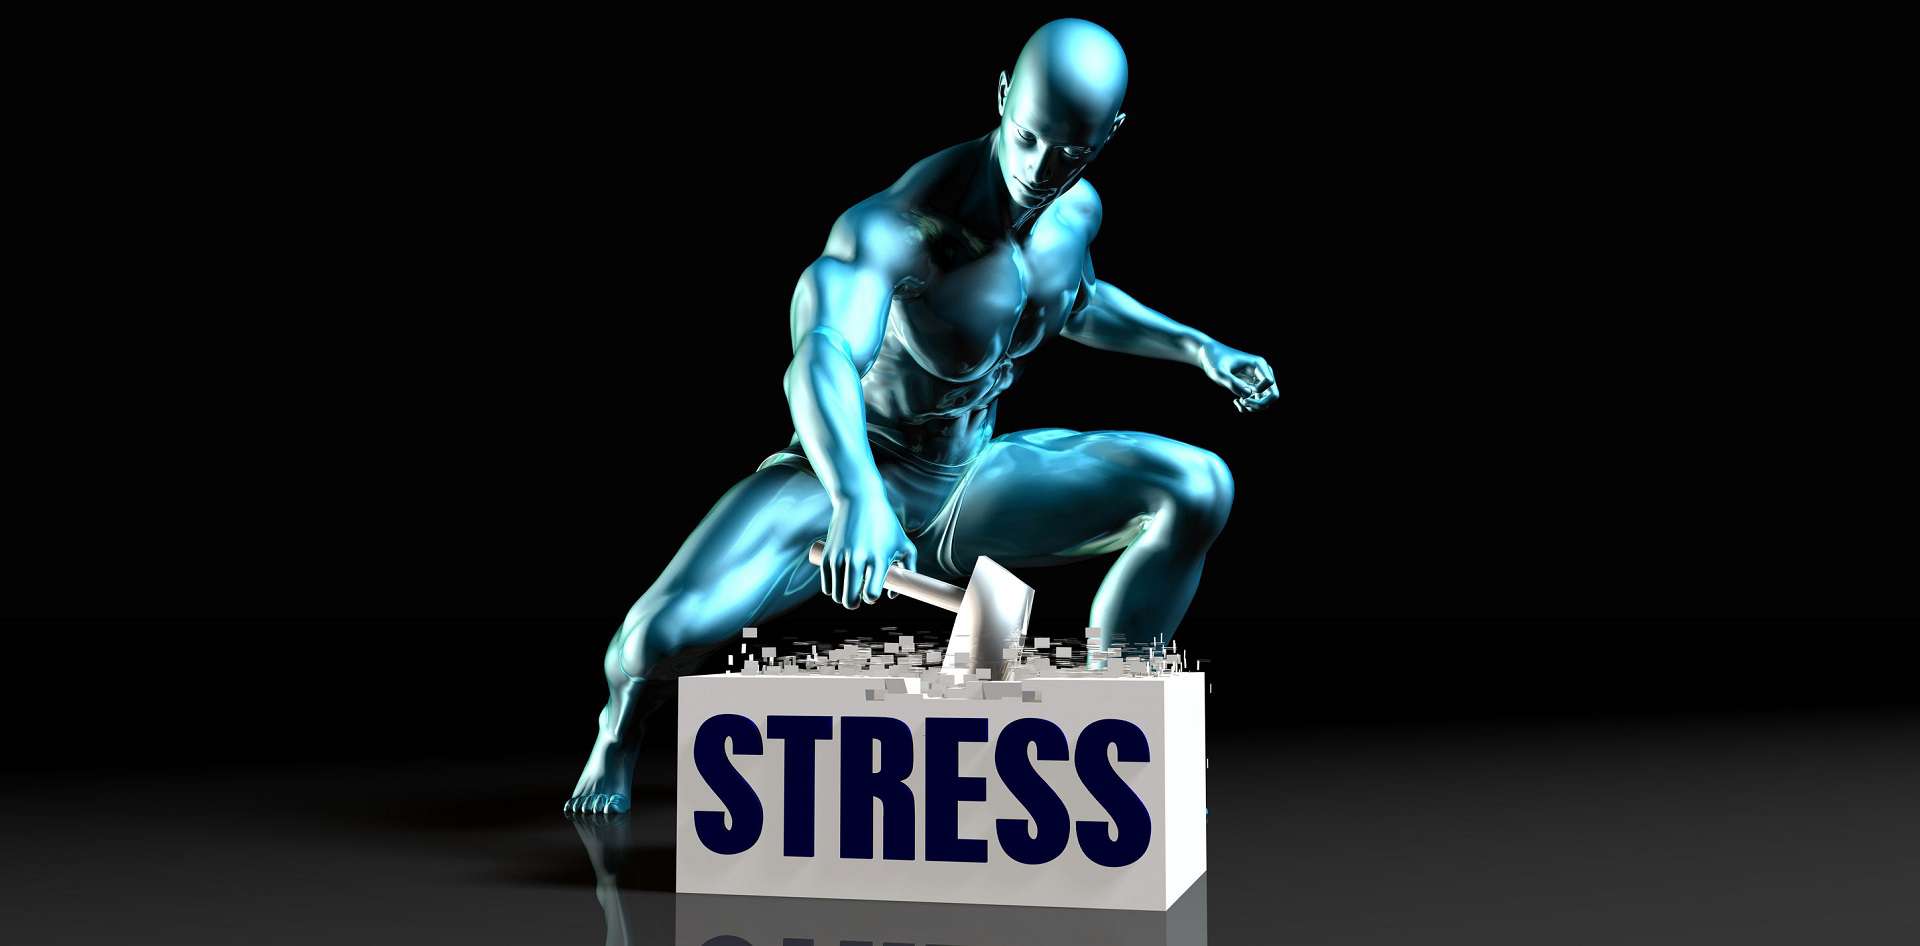 SZEŚĆ TECHNIK NA POZBYCIE SIĘ STRESU